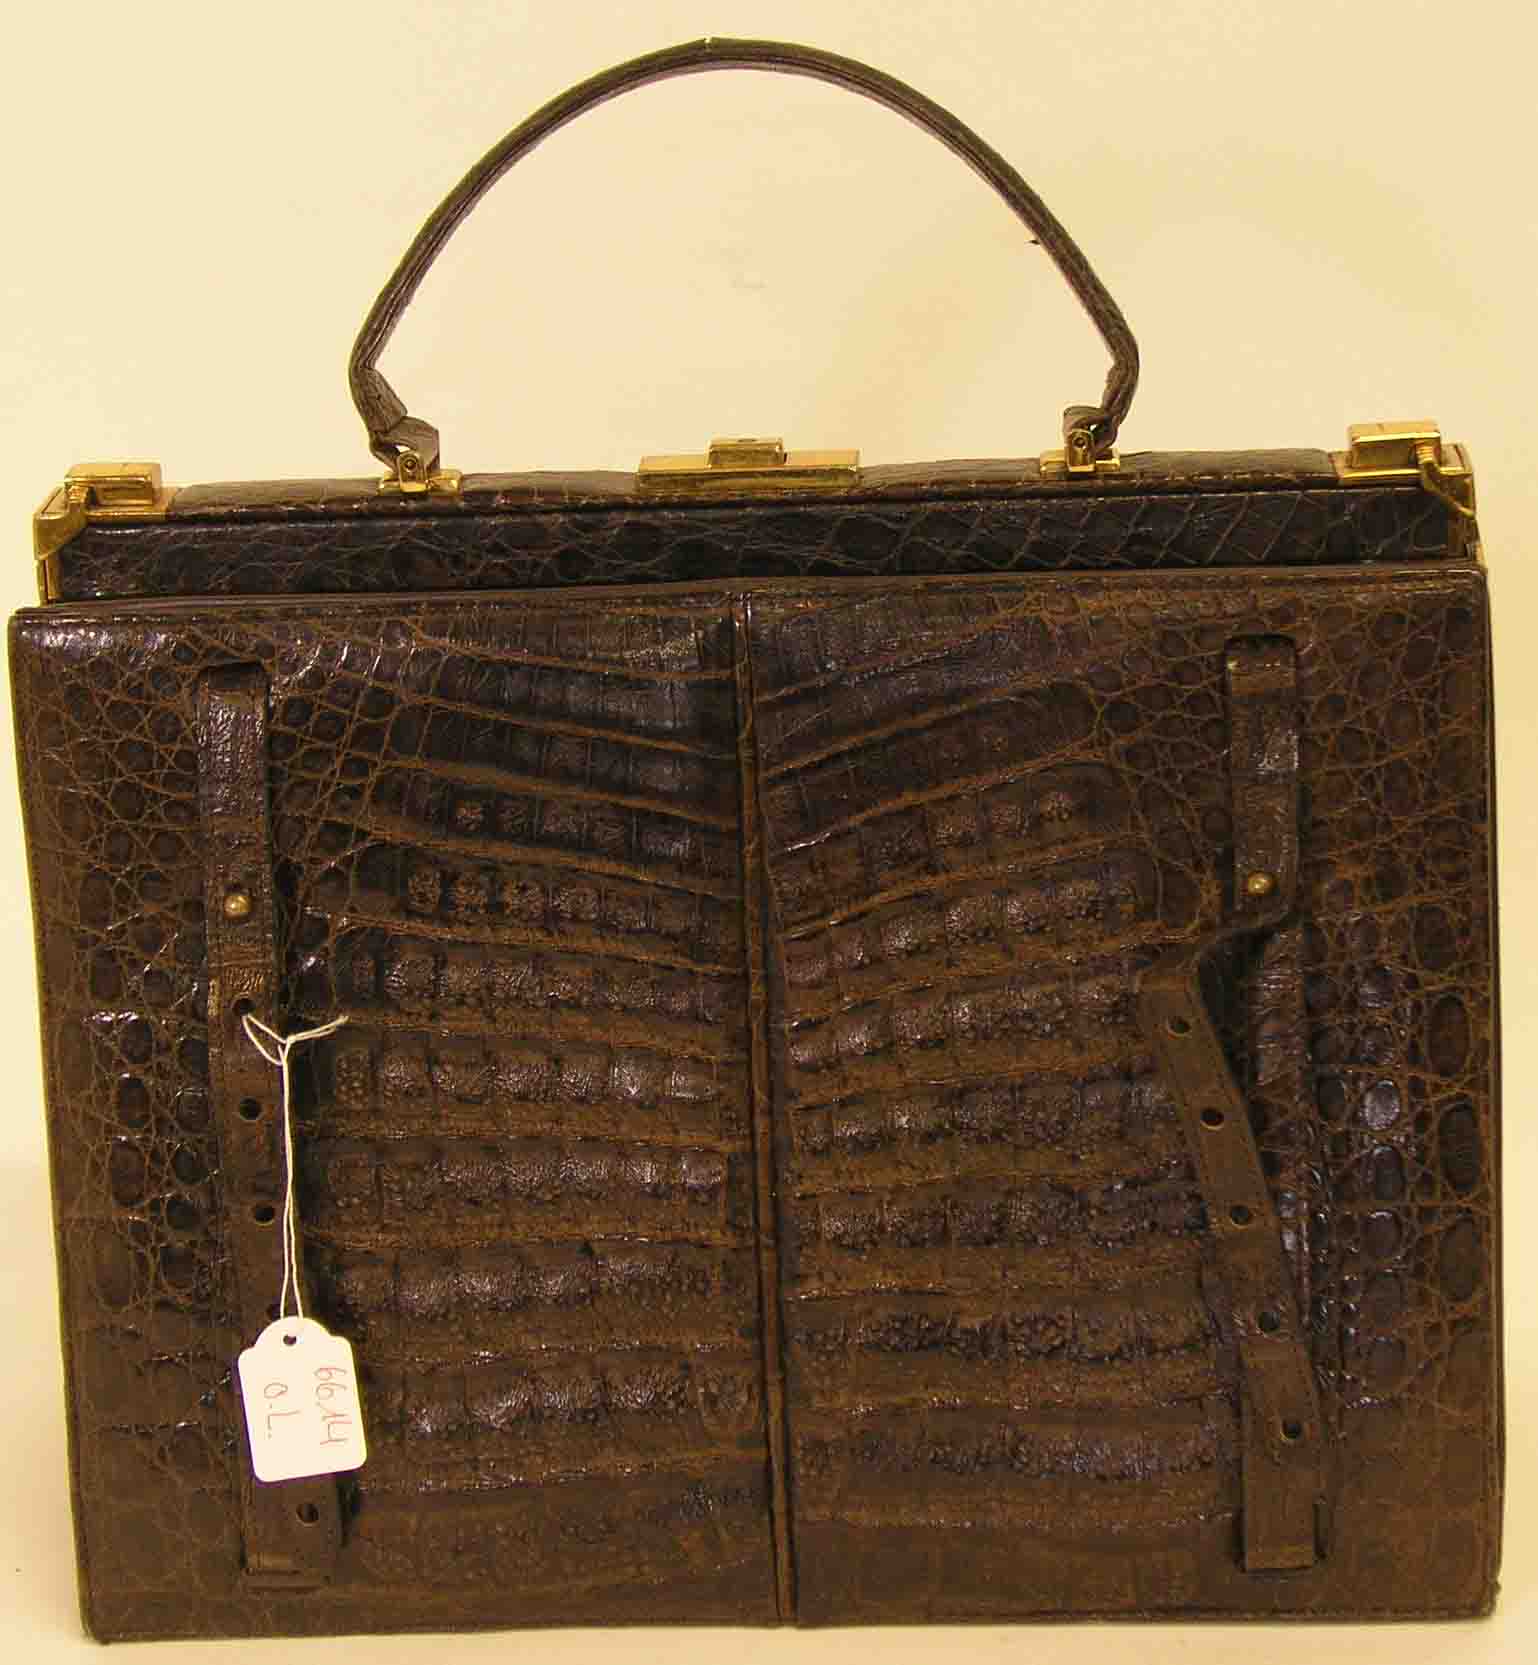 Damenhandtasche in Kroko-Optik. 27 x 33 x 15cm; Gebrauchsspuren.